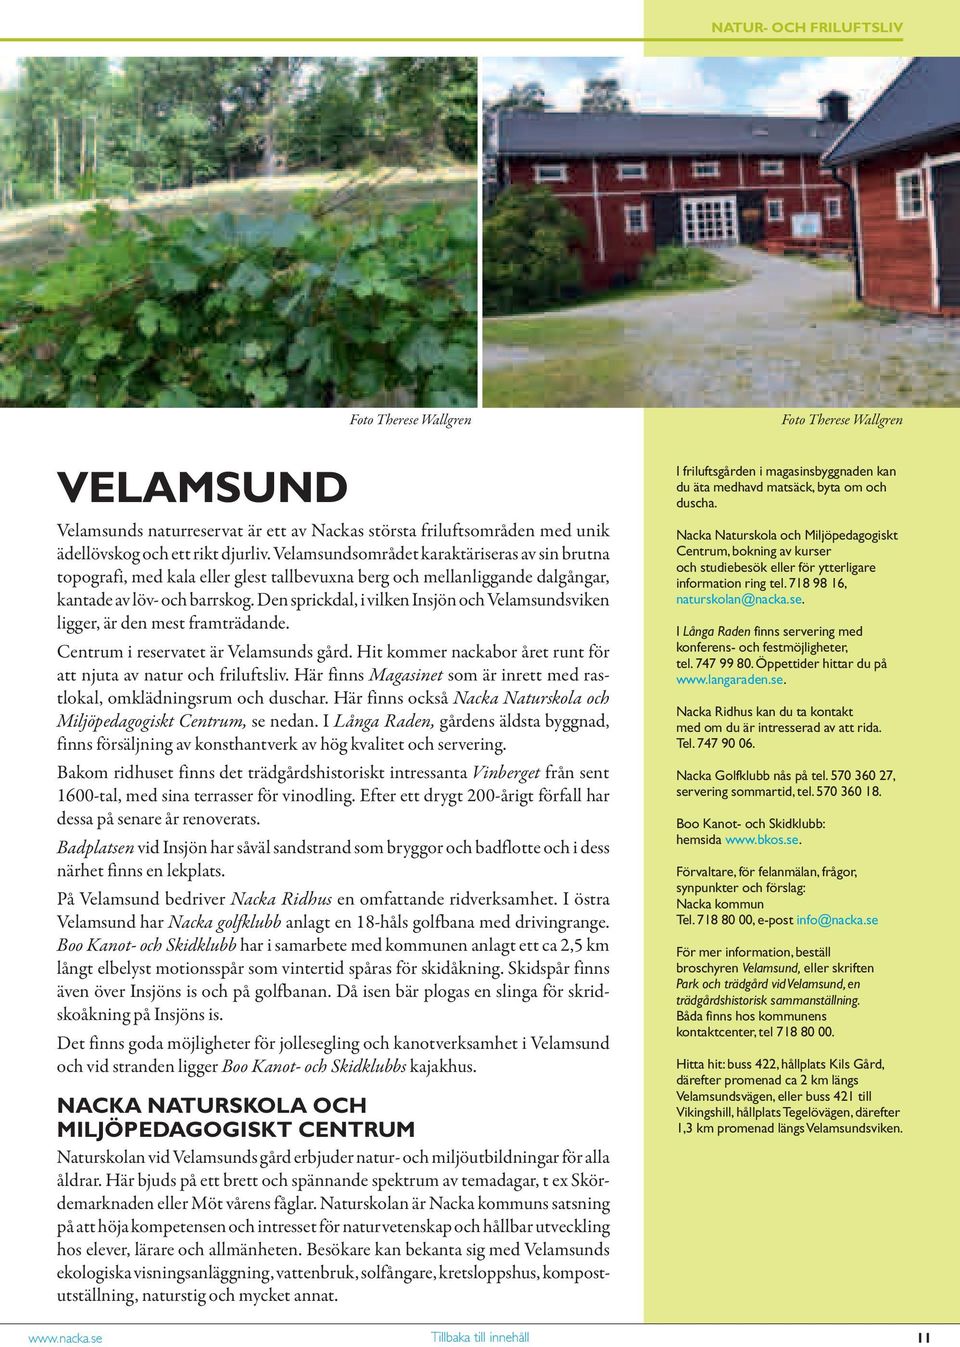 Den sprickdal, i vilken Insjön och Velamsundsviken ligger, är den mest framträdande. Centrum i reservatet är Velamsunds gård. Hit kommer nackabor året runt för att njuta av natur och friluftsliv.